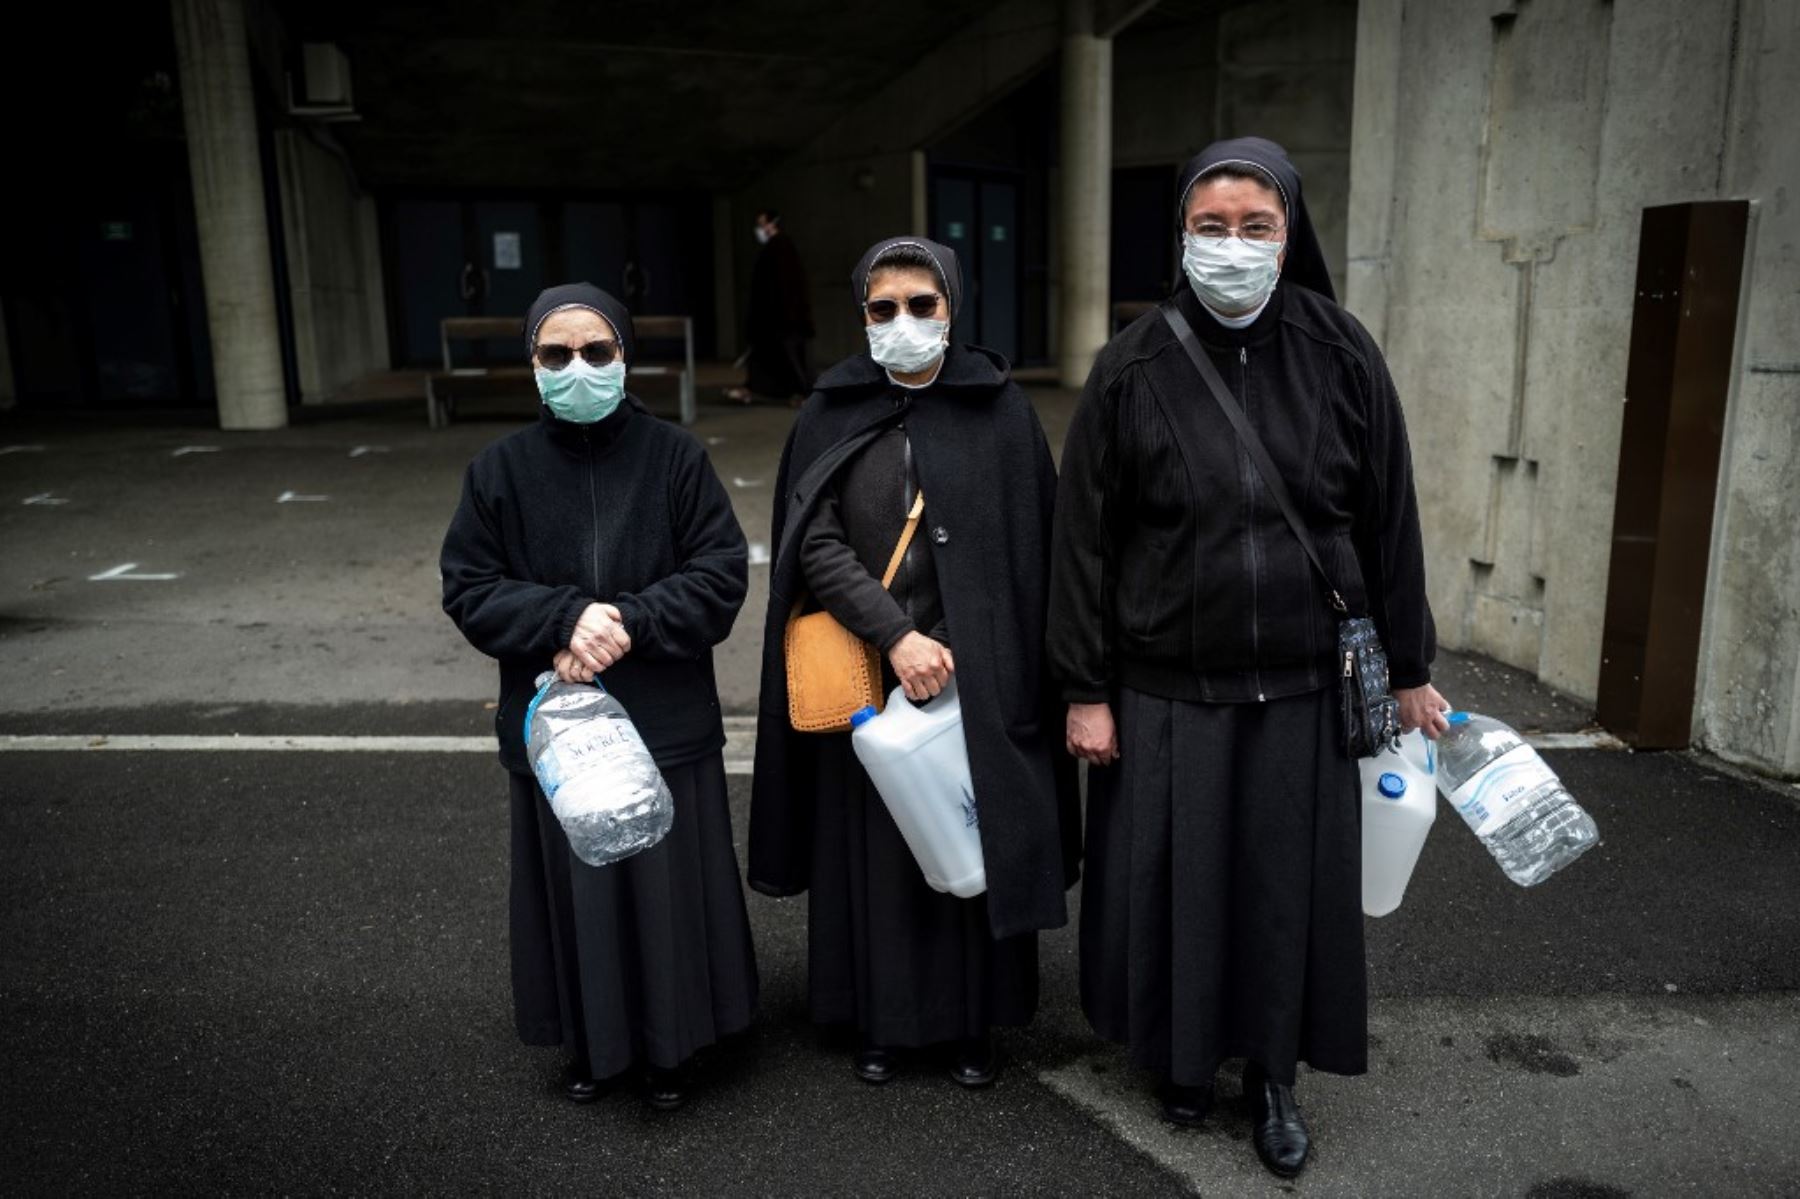 Los peregrinos con máscaras faciales esperan para recoger agua en el Santuario de Nuestra Señora de Lourdes en Lourdes, suroeste de Francia. Foto: AFP